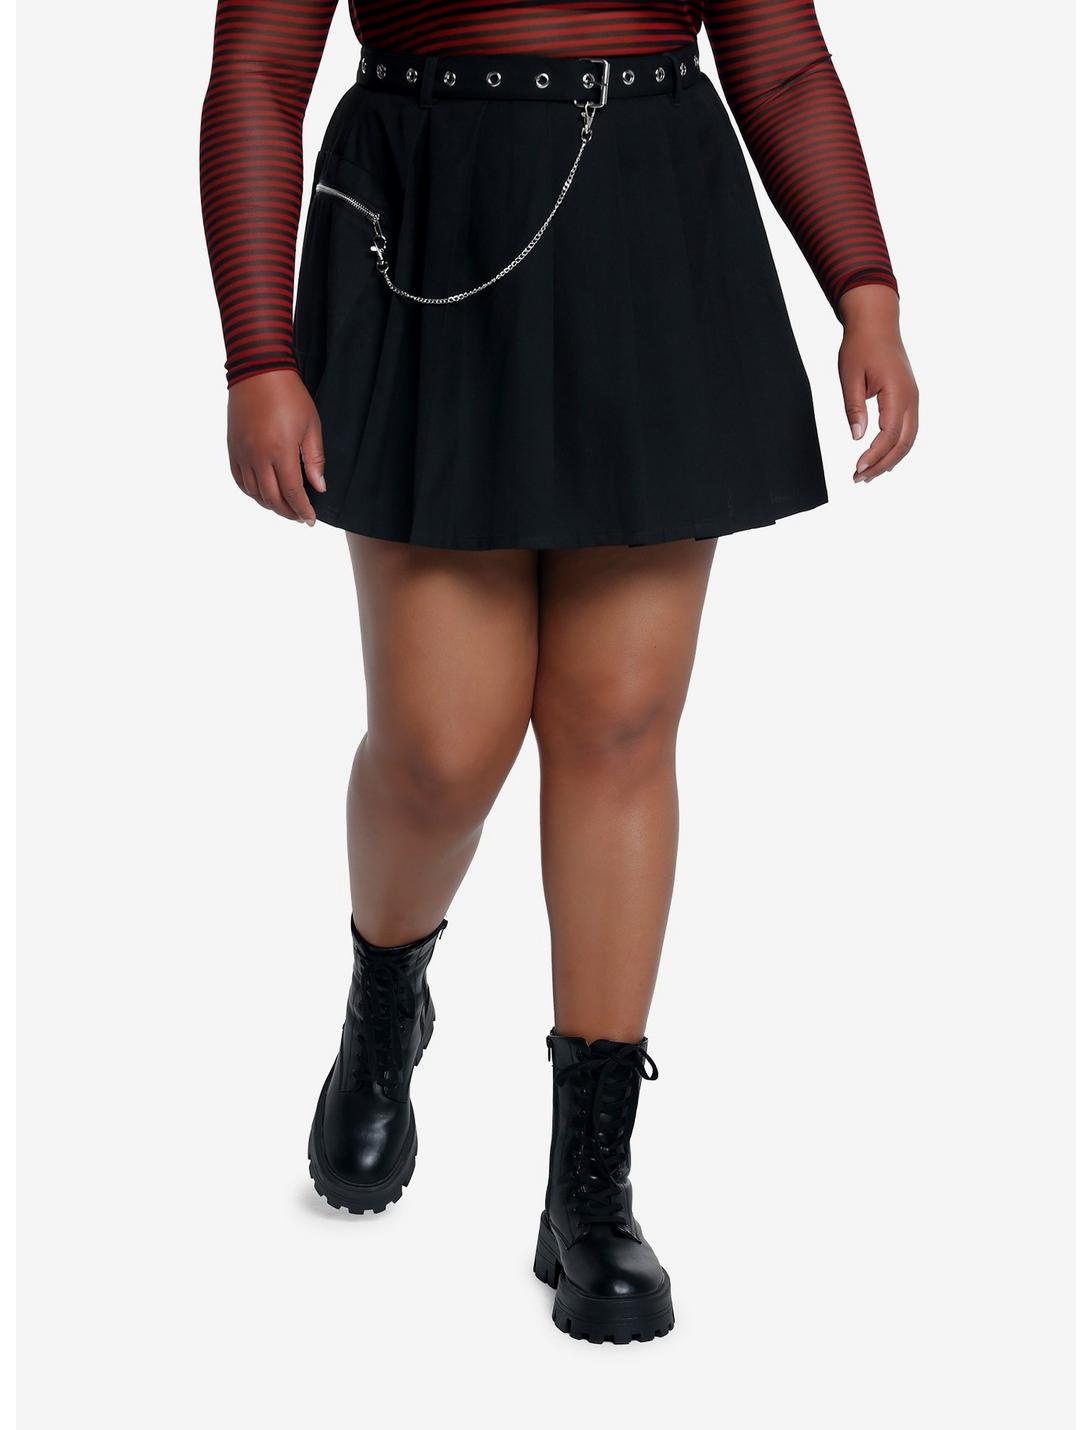 Social Collision Black Grommet Chain Pleated Skirt Plus Size, BLACK, hi-res